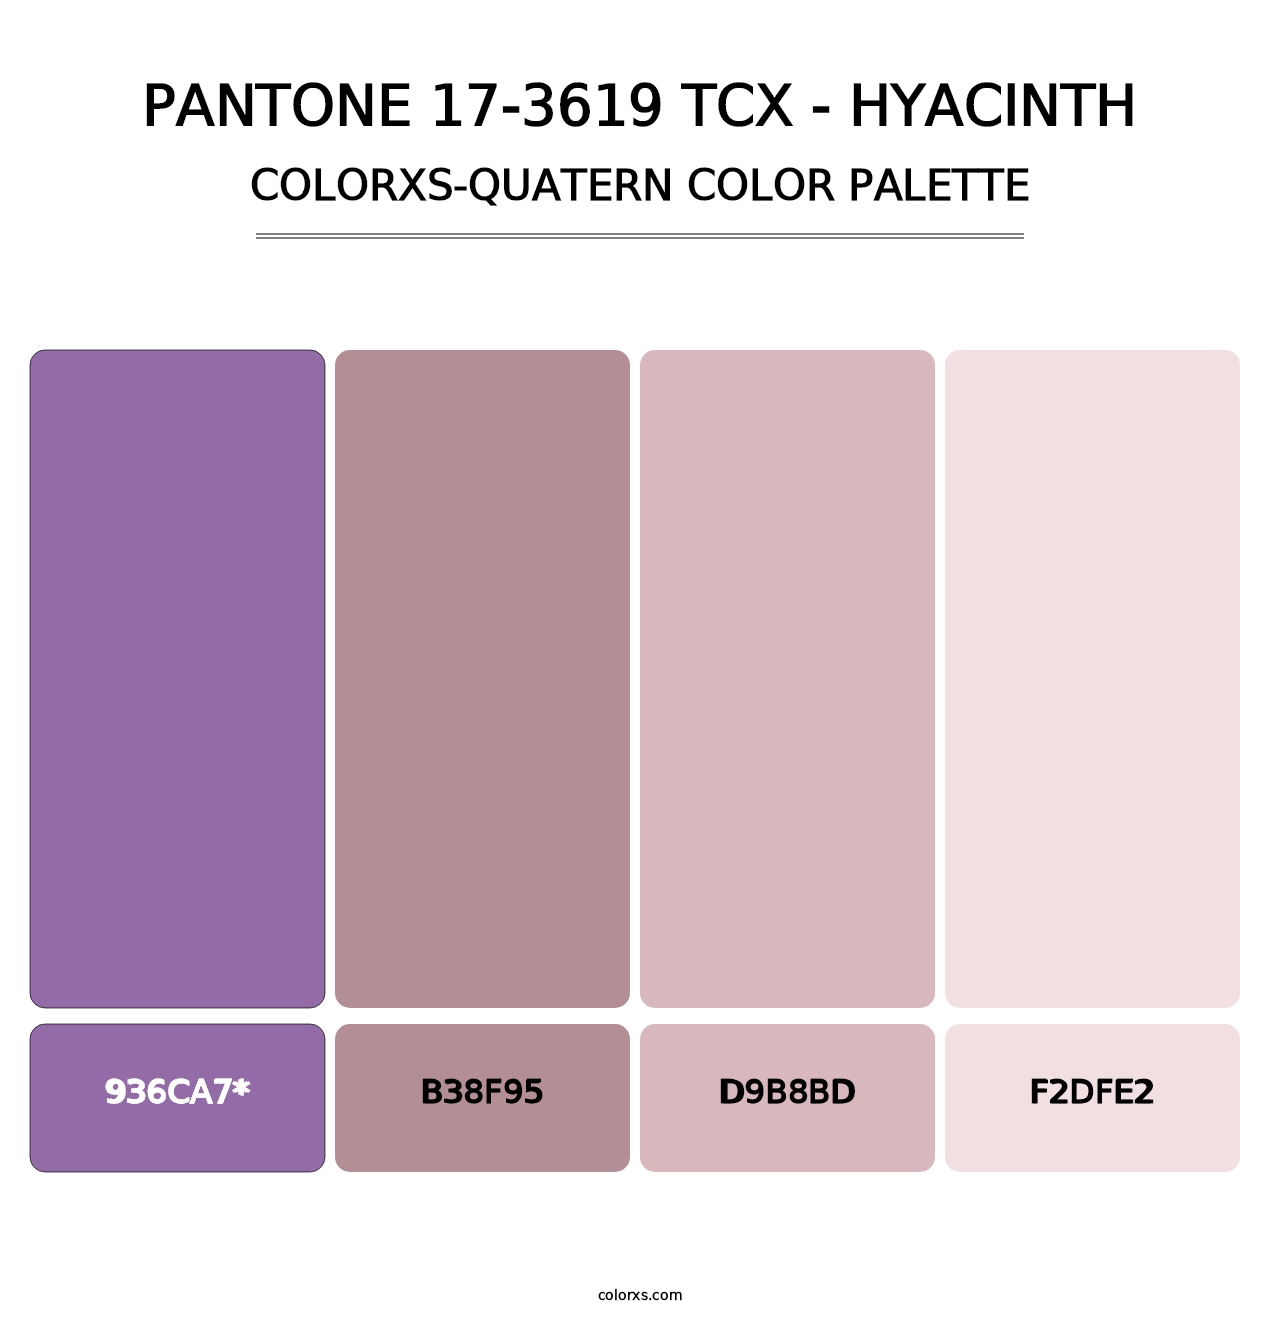 PANTONE 17-3619 TCX - Hyacinth - Colorxs Quatern Palette